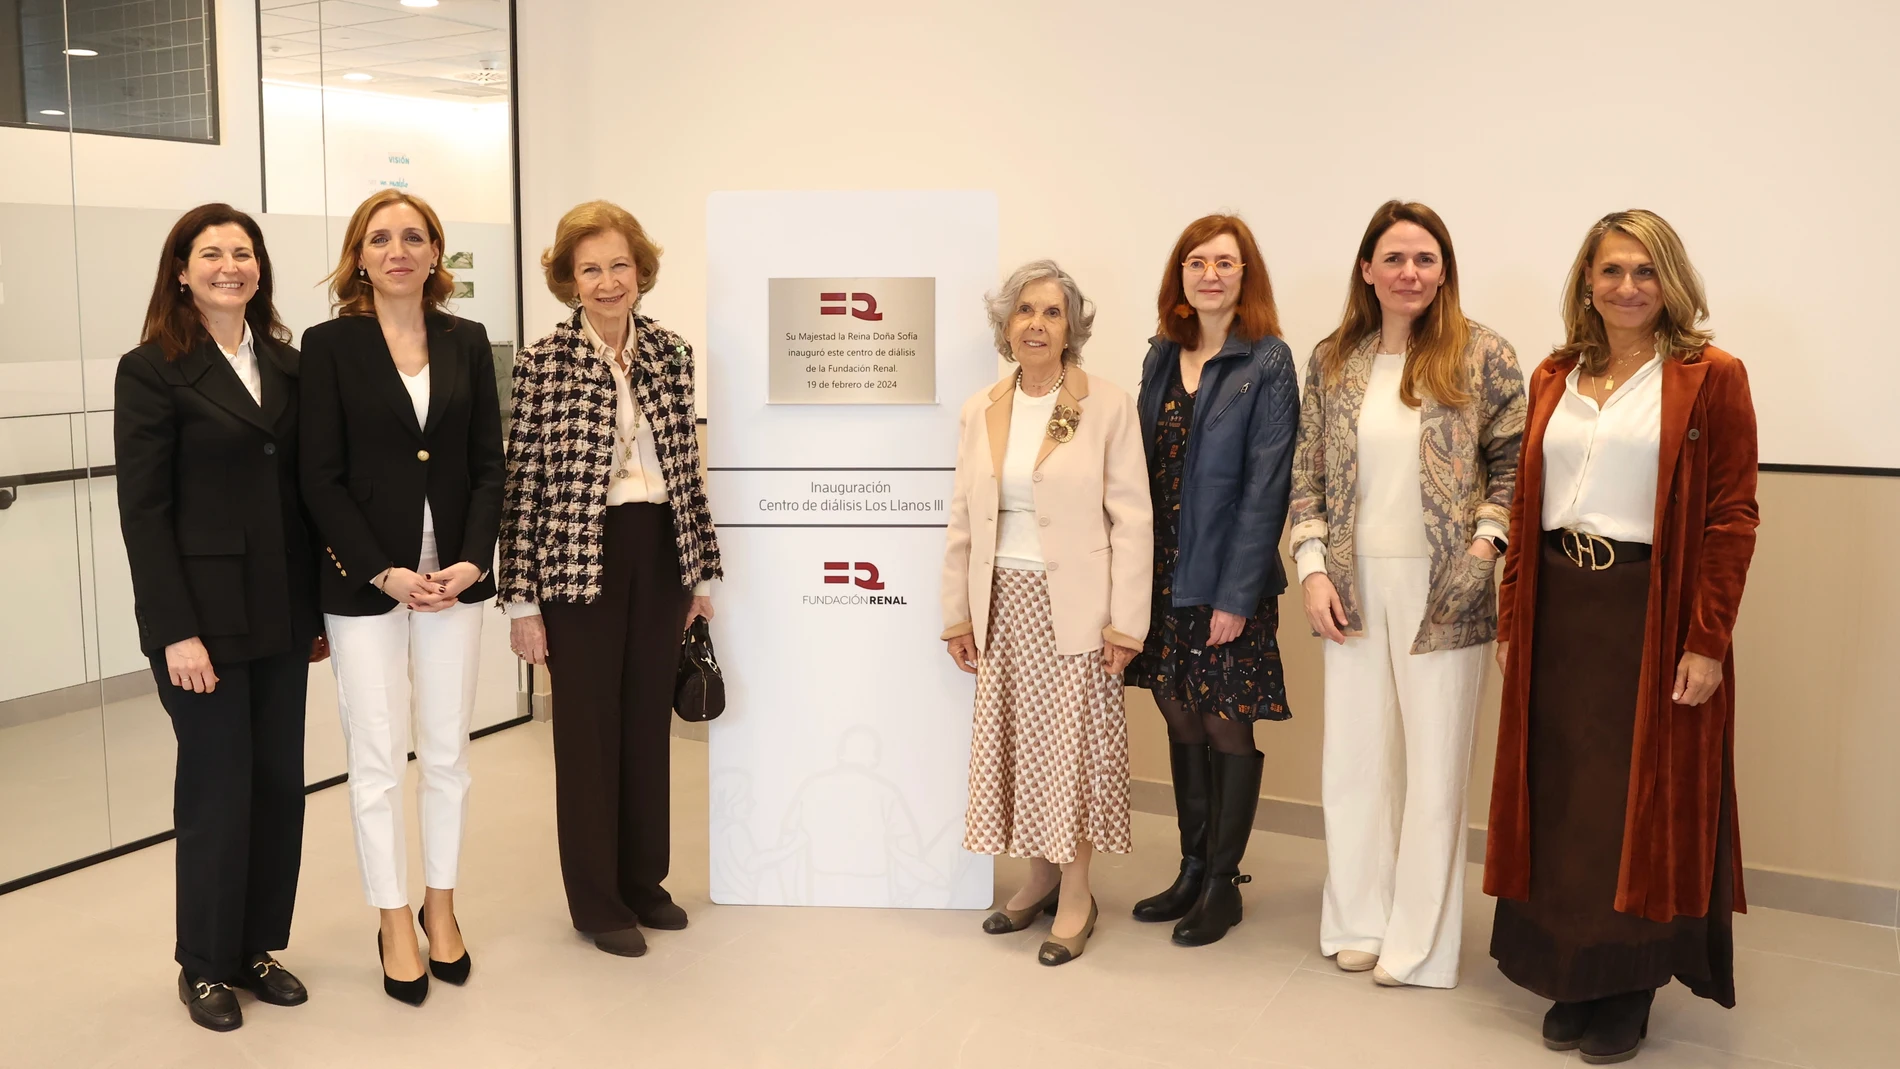 La Fundación Renal abre en Alcorcón el “centro de diálisis ideal” diseñado por pacientes y profesionales